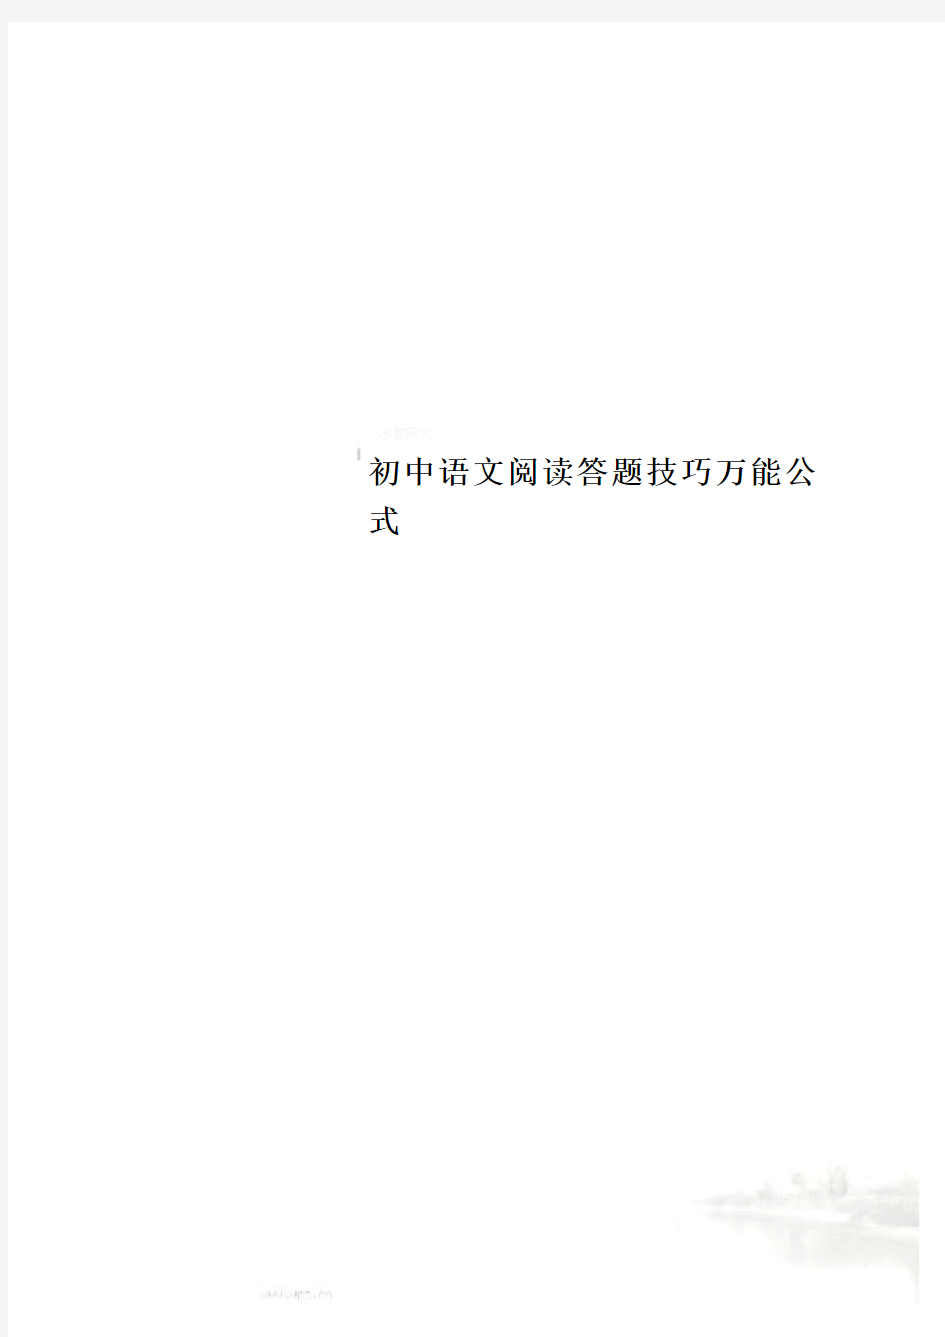 初中语文阅读答题技巧万能公式